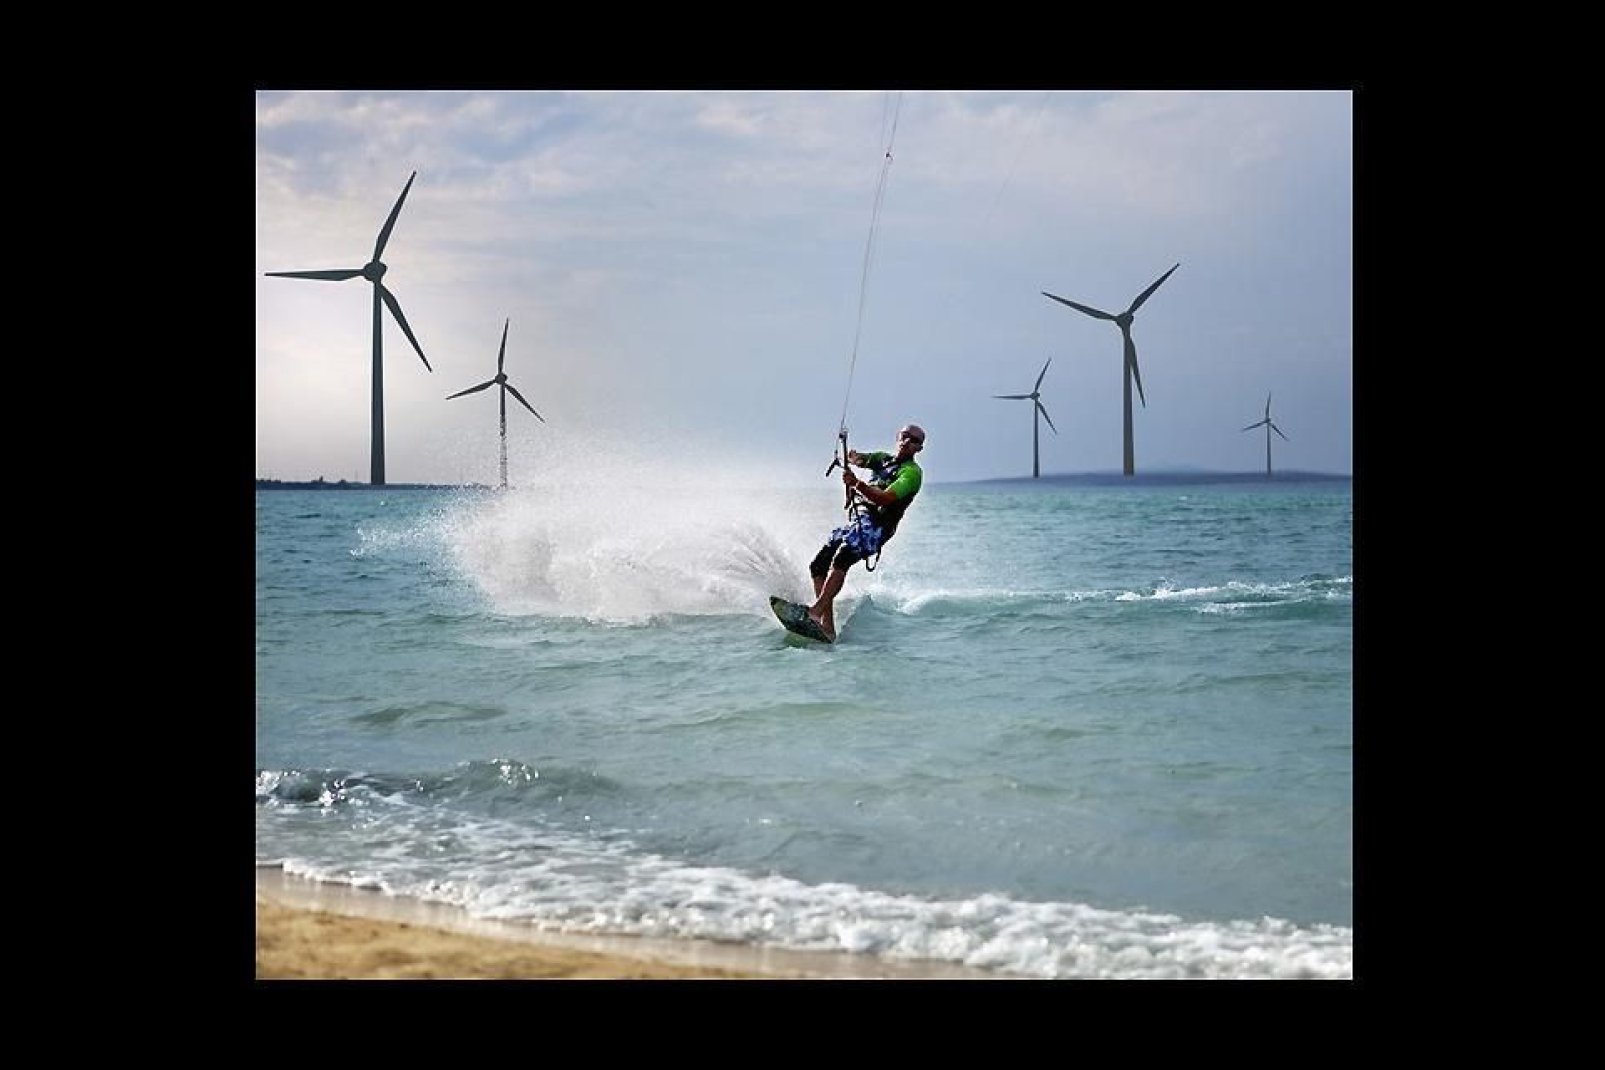 La côte de Zadar offre de multiples sports nautiques, sur la photo des éoliennes.